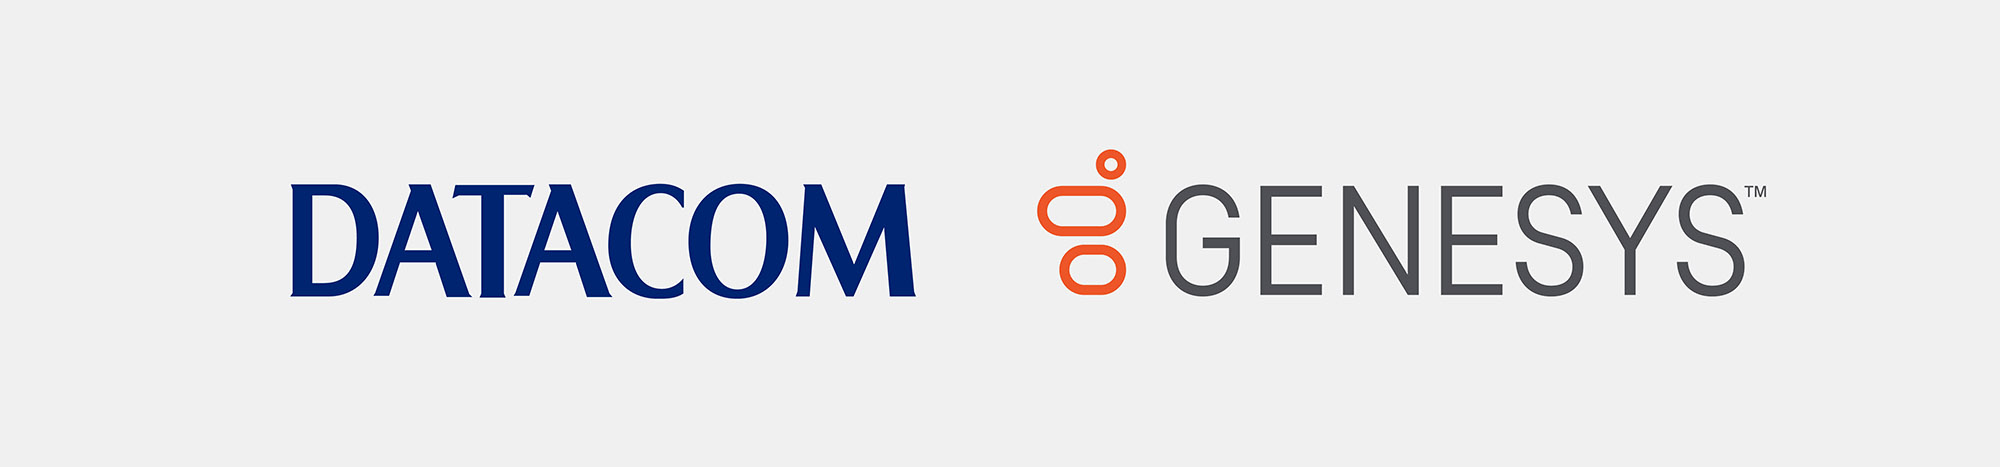 Datacom and Genesys logos